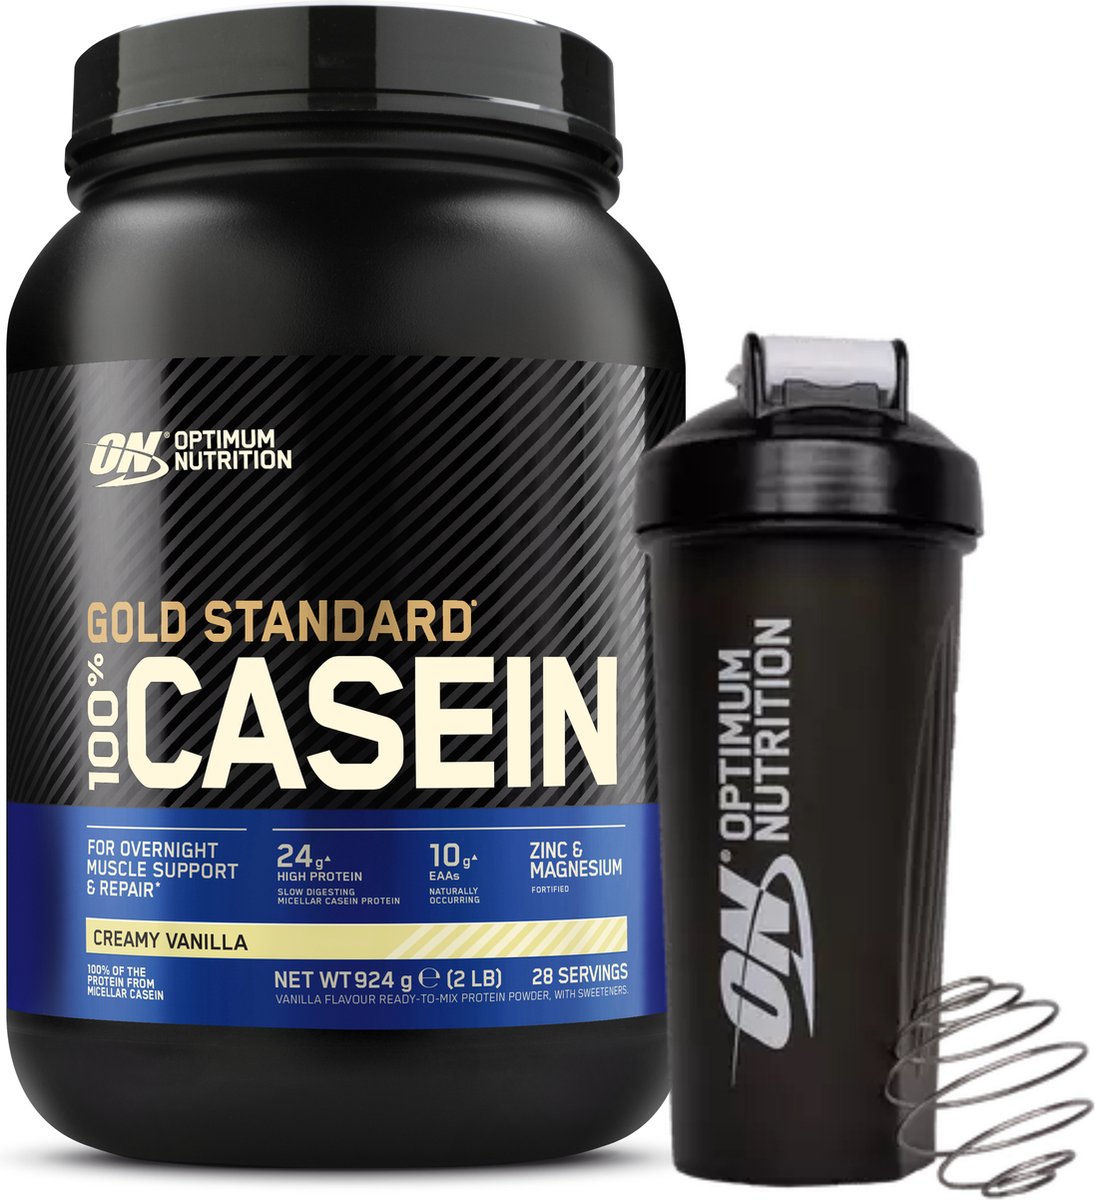 Optimum Nutrition 100% Casein Time Release Protein Bundel - Vanille Caseine Proteine Poeder + ON Shakebeker - 28 servings (924 gram)